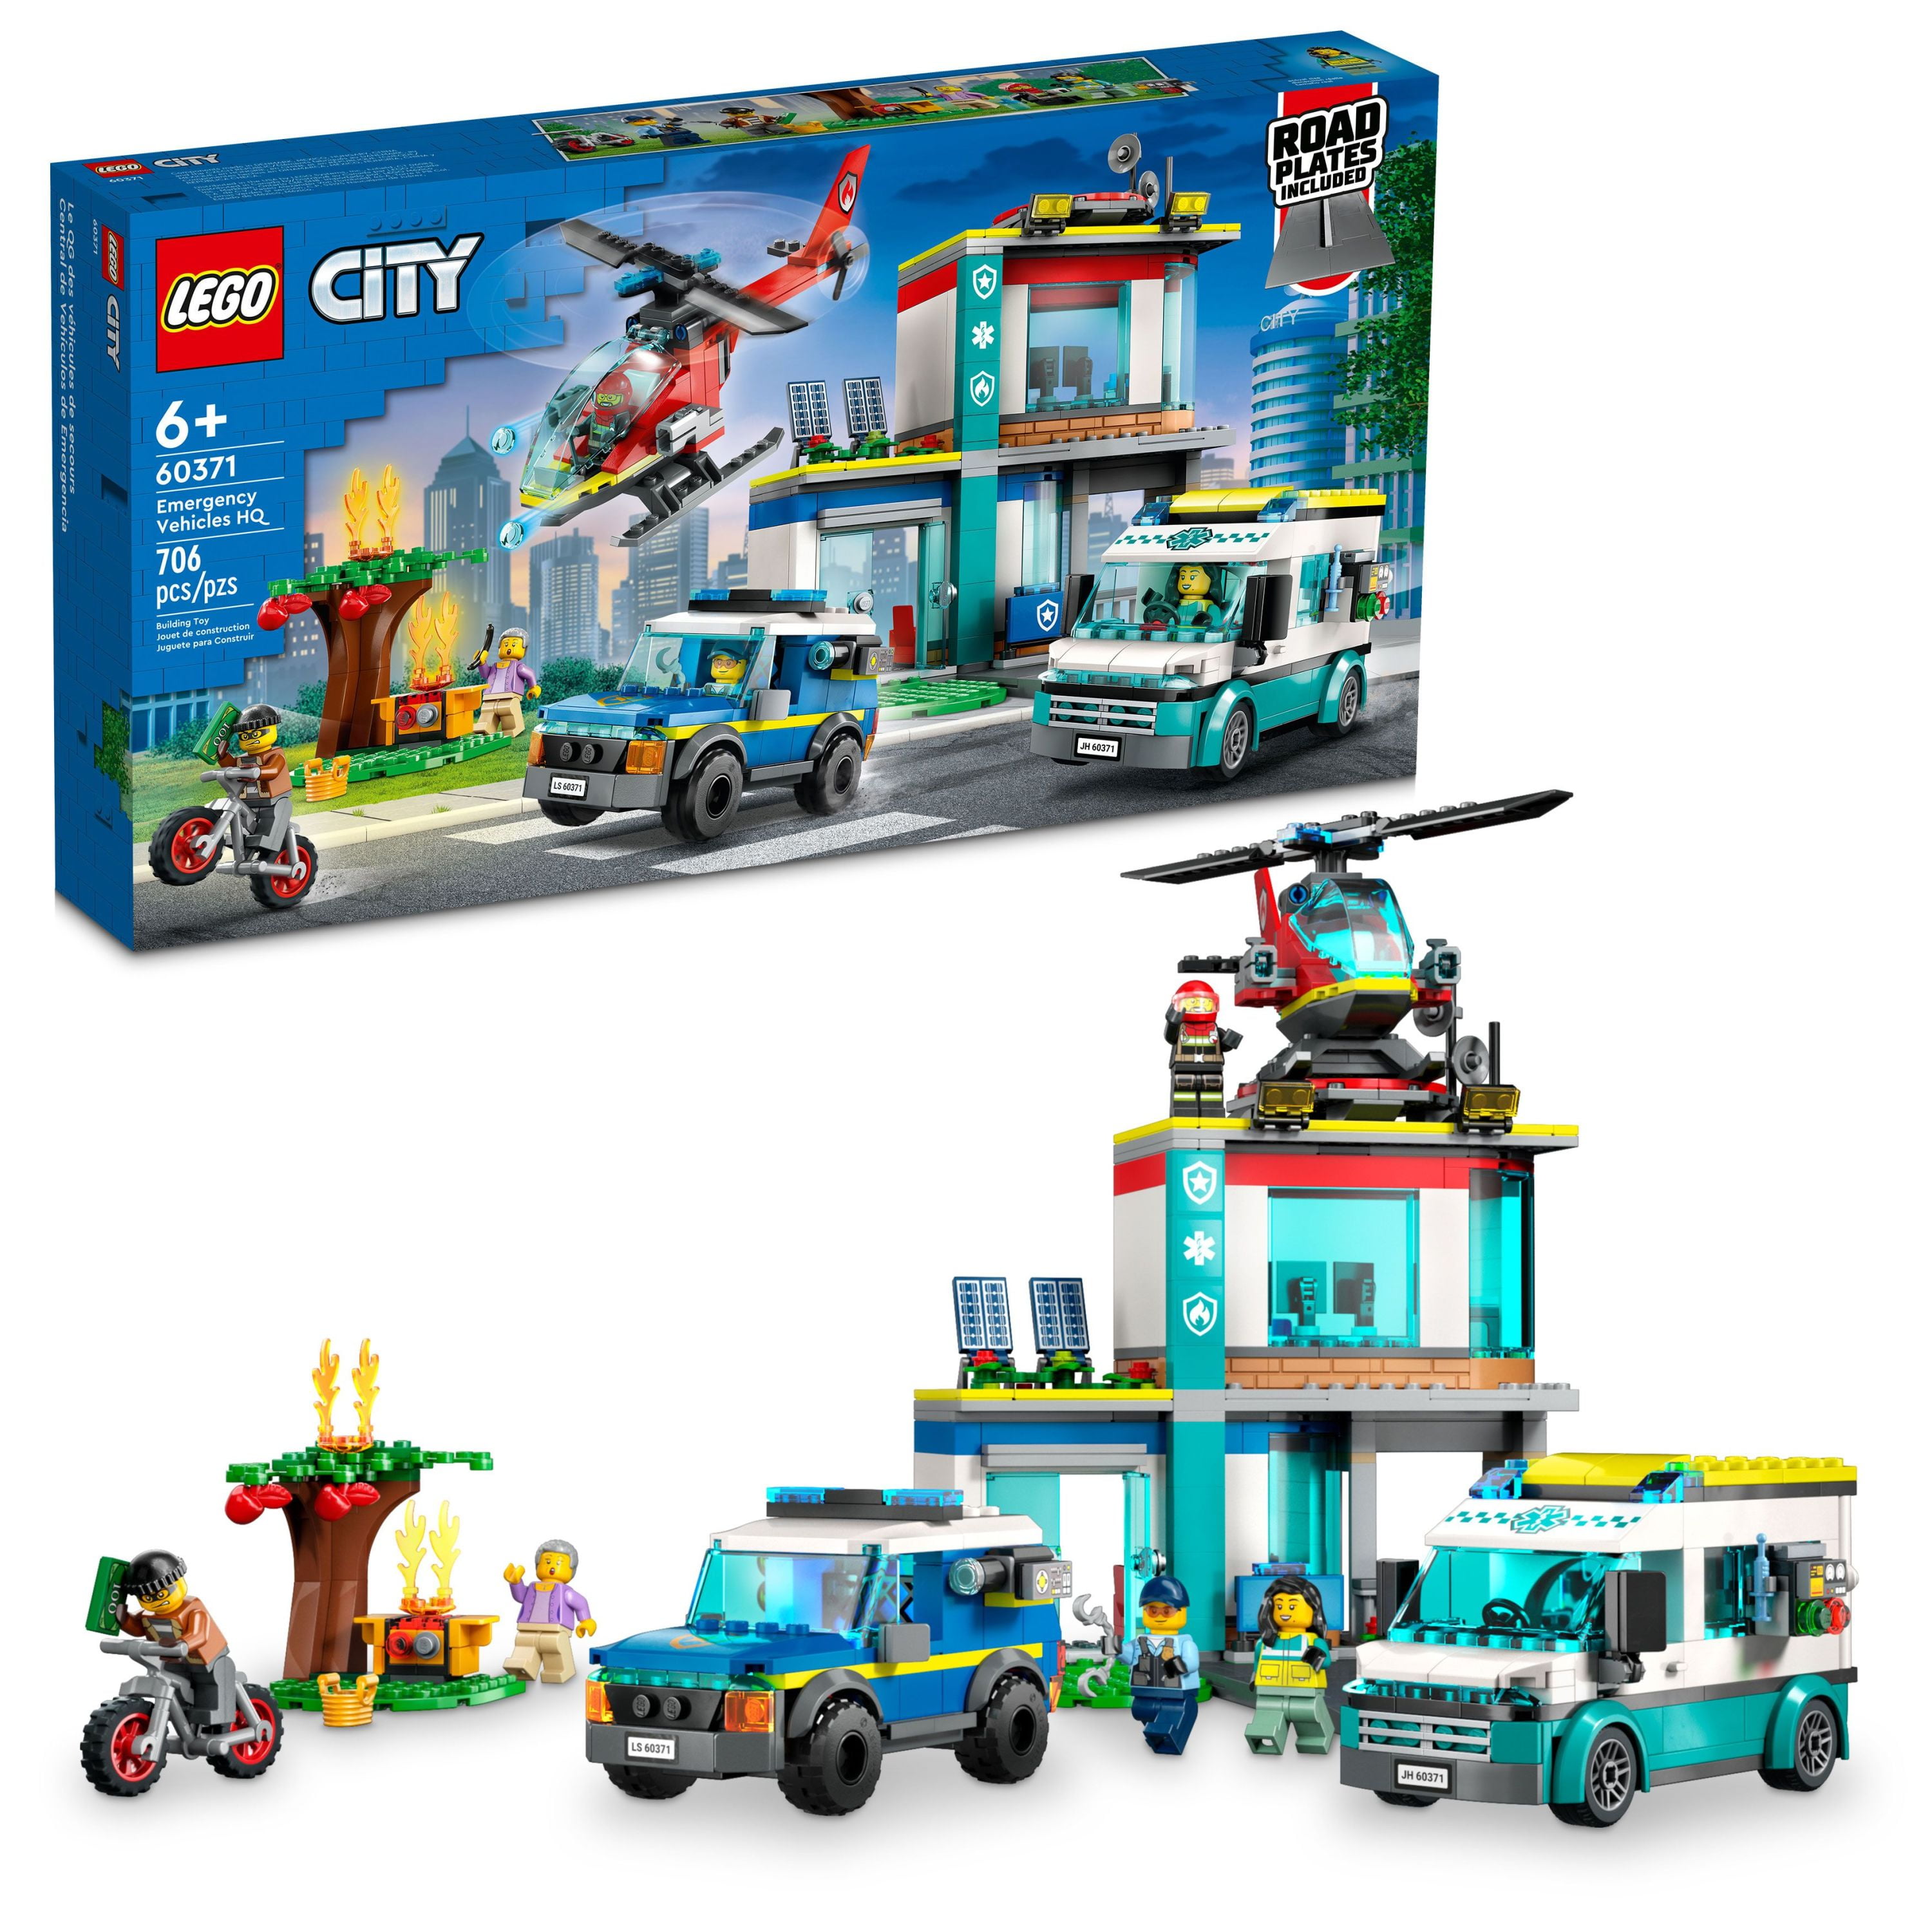 LEGO City Vehicles Building Set - Walmart.com